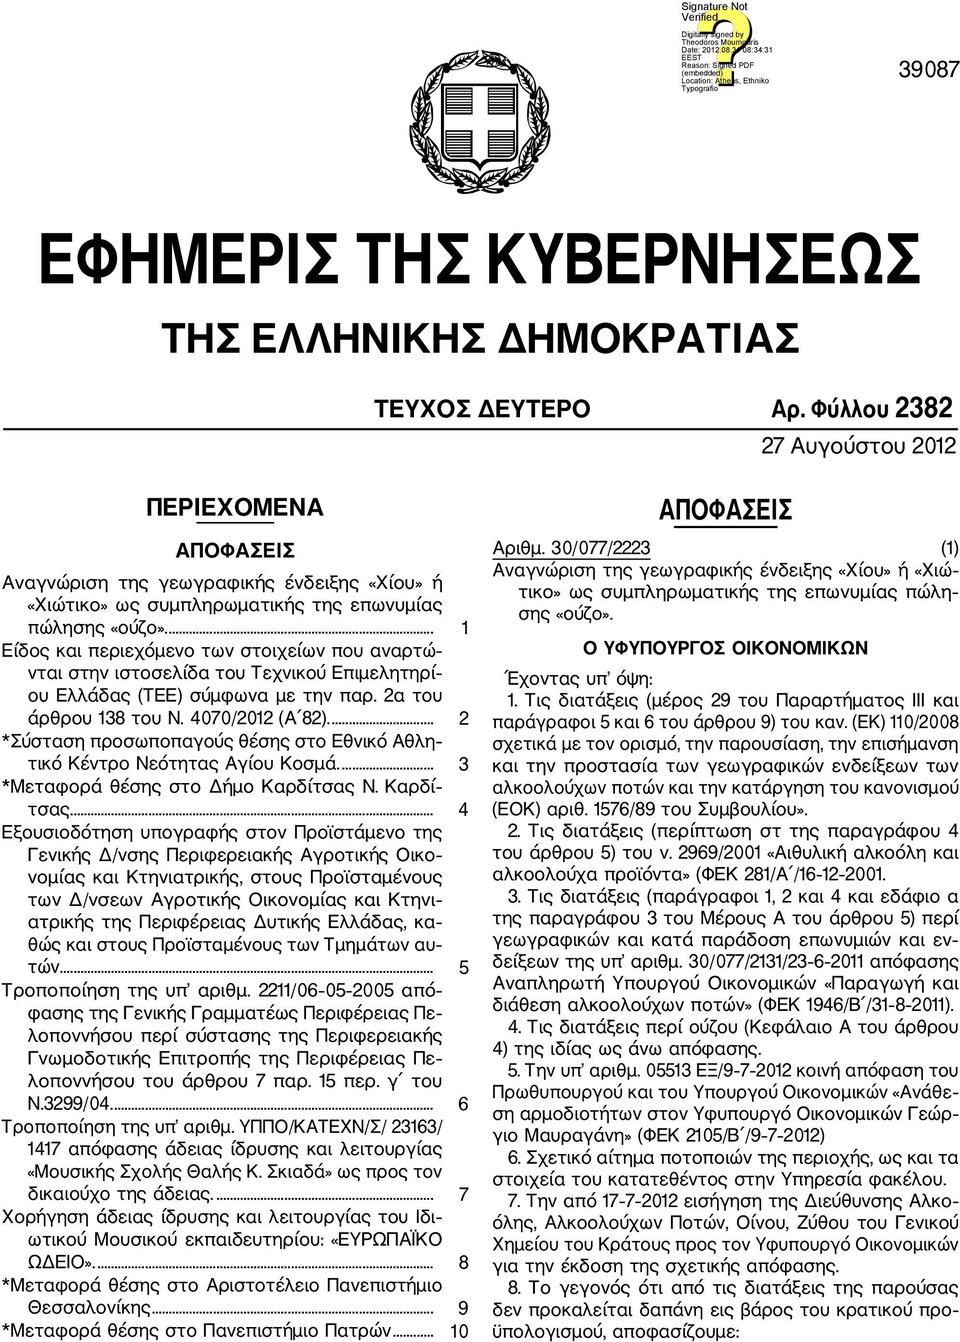 ... 1 Είδος και περιεχόμενο των στοιχείων που αναρτώ νται στην ιστοσελίδα του Τεχνικού Επιμελητηρί ου Ελλάδας (ΤΕΕ) σύμφωνα με την παρ. 2α του άρθρου 138 του Ν. 4070/2012 (Α 82).